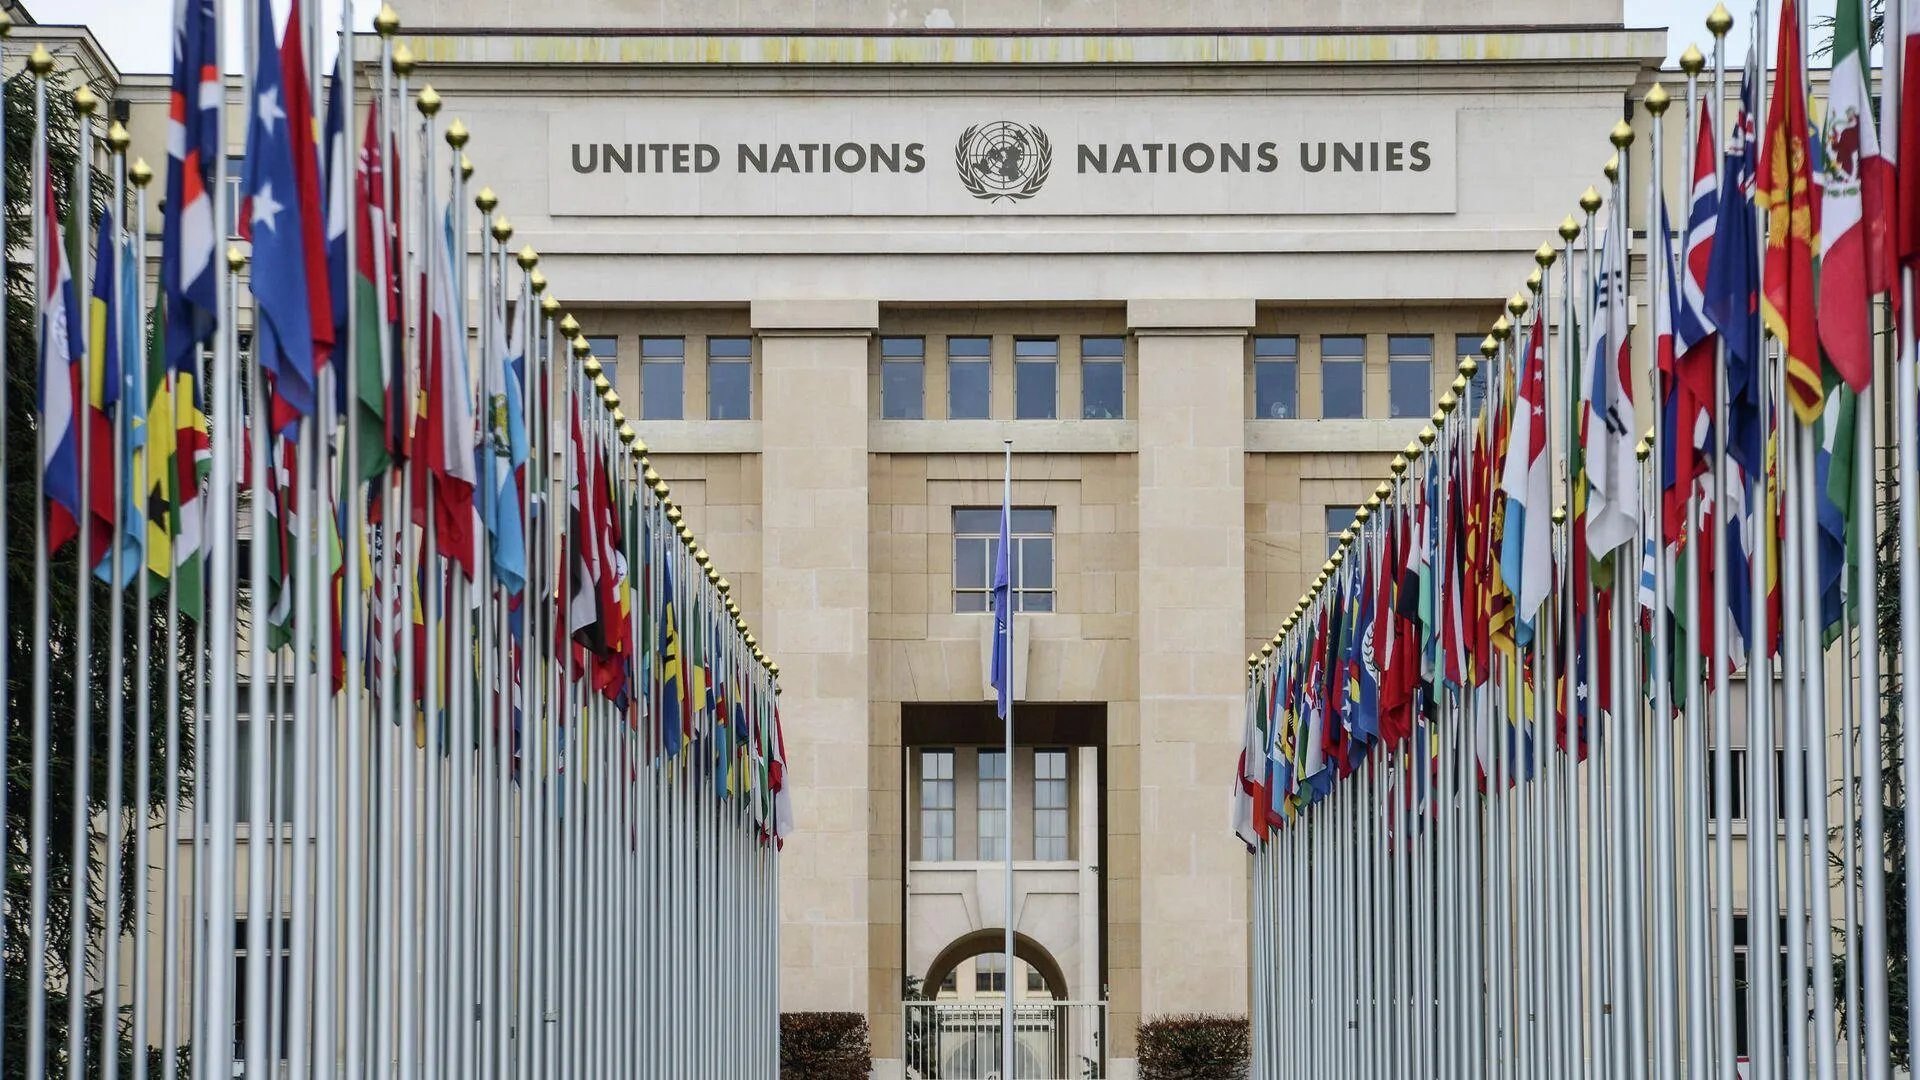 ООН сравнили с Лигой Наций перед Второй мировой войной